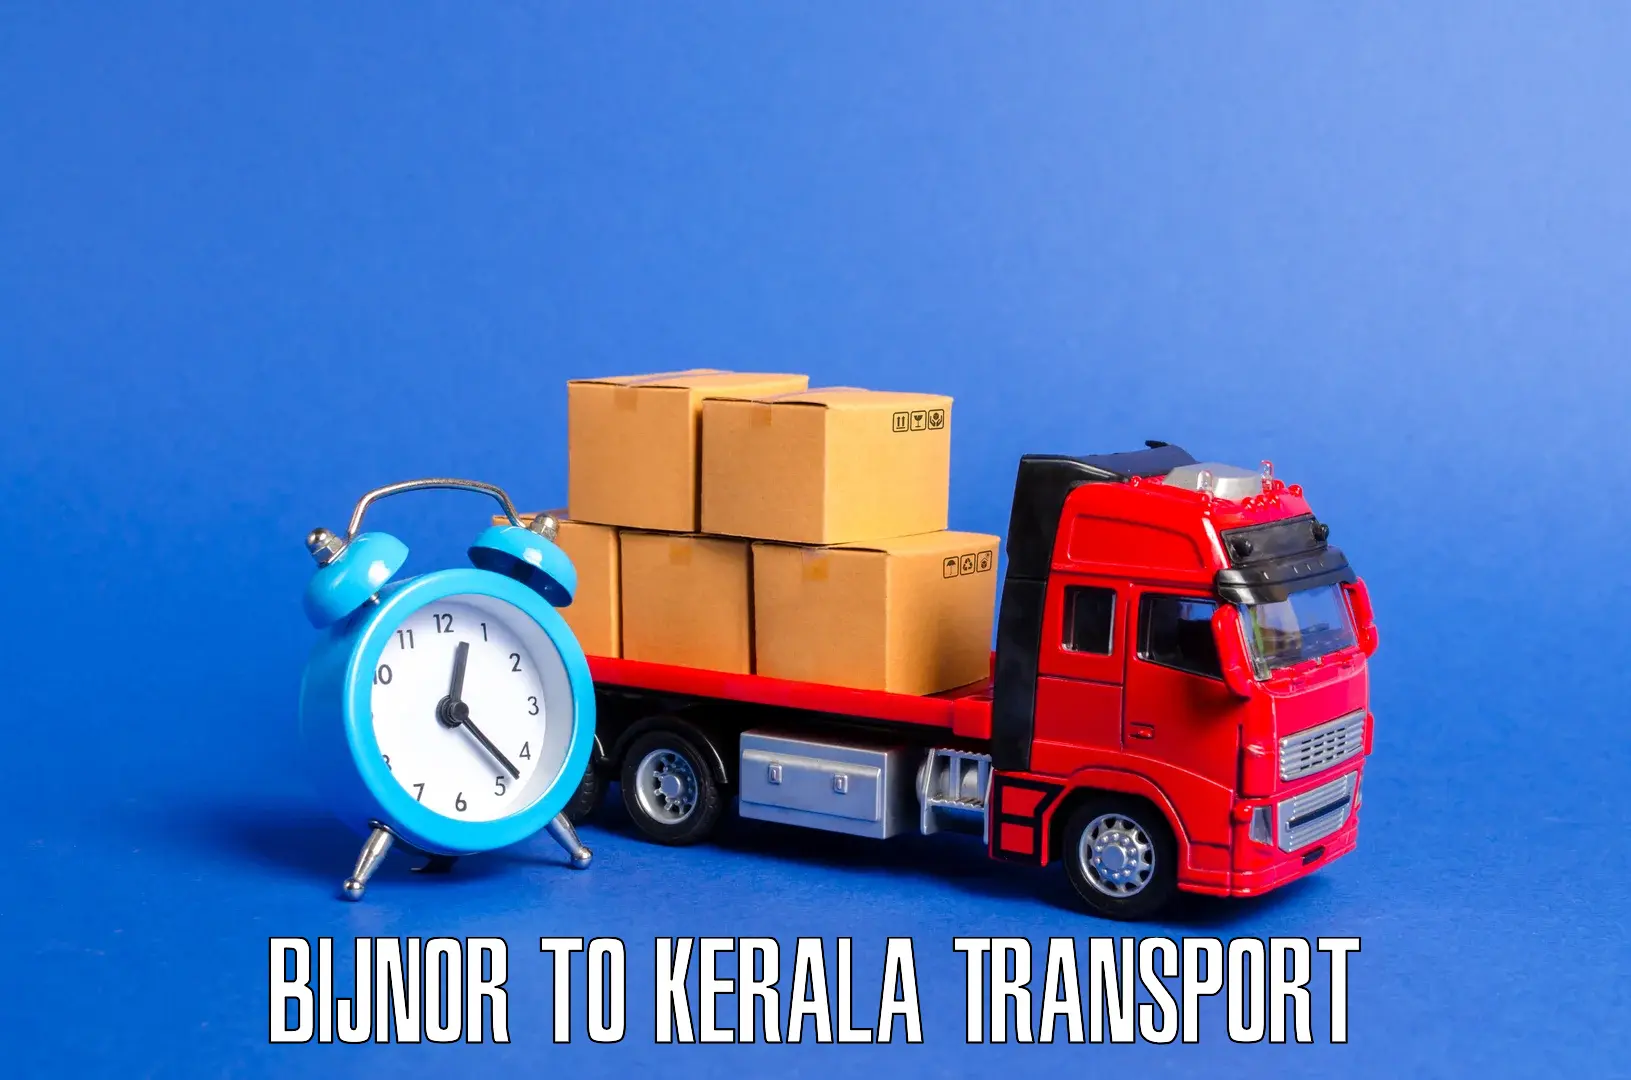 Transport shared services Bijnor to Thrissur